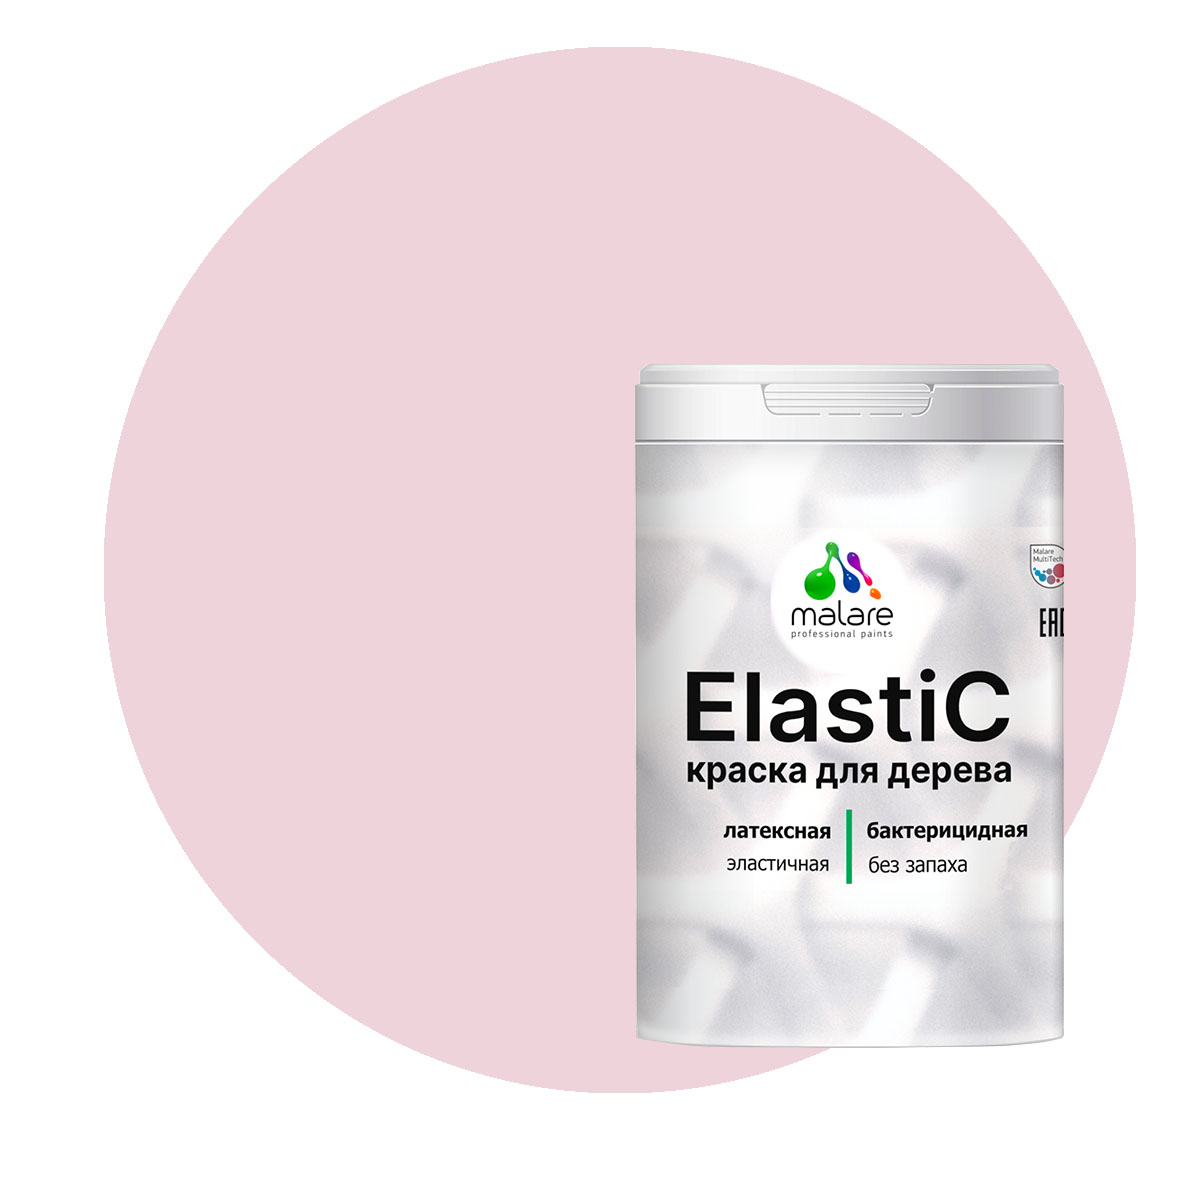 Краска Malare Elastic для деревянных поверхностей, бледно-розовый, 1 кг. косметичка на молнии матовый розовый